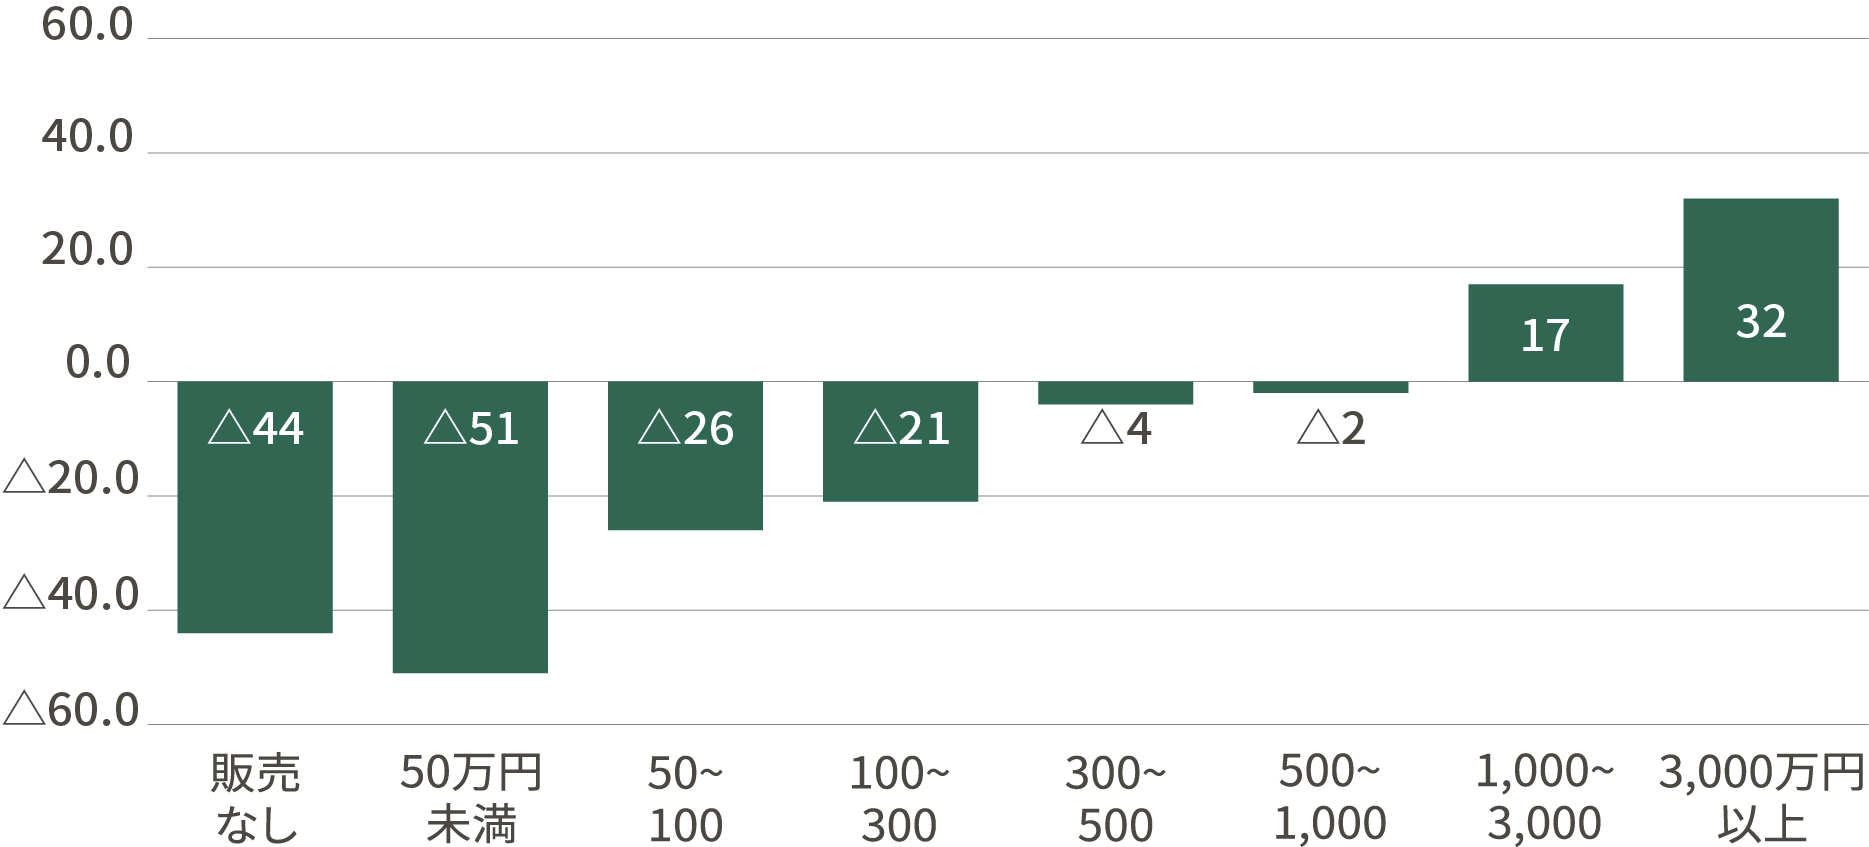 農産物販売金額規模別農業経営体数の増減率(平成27年→令和2年)